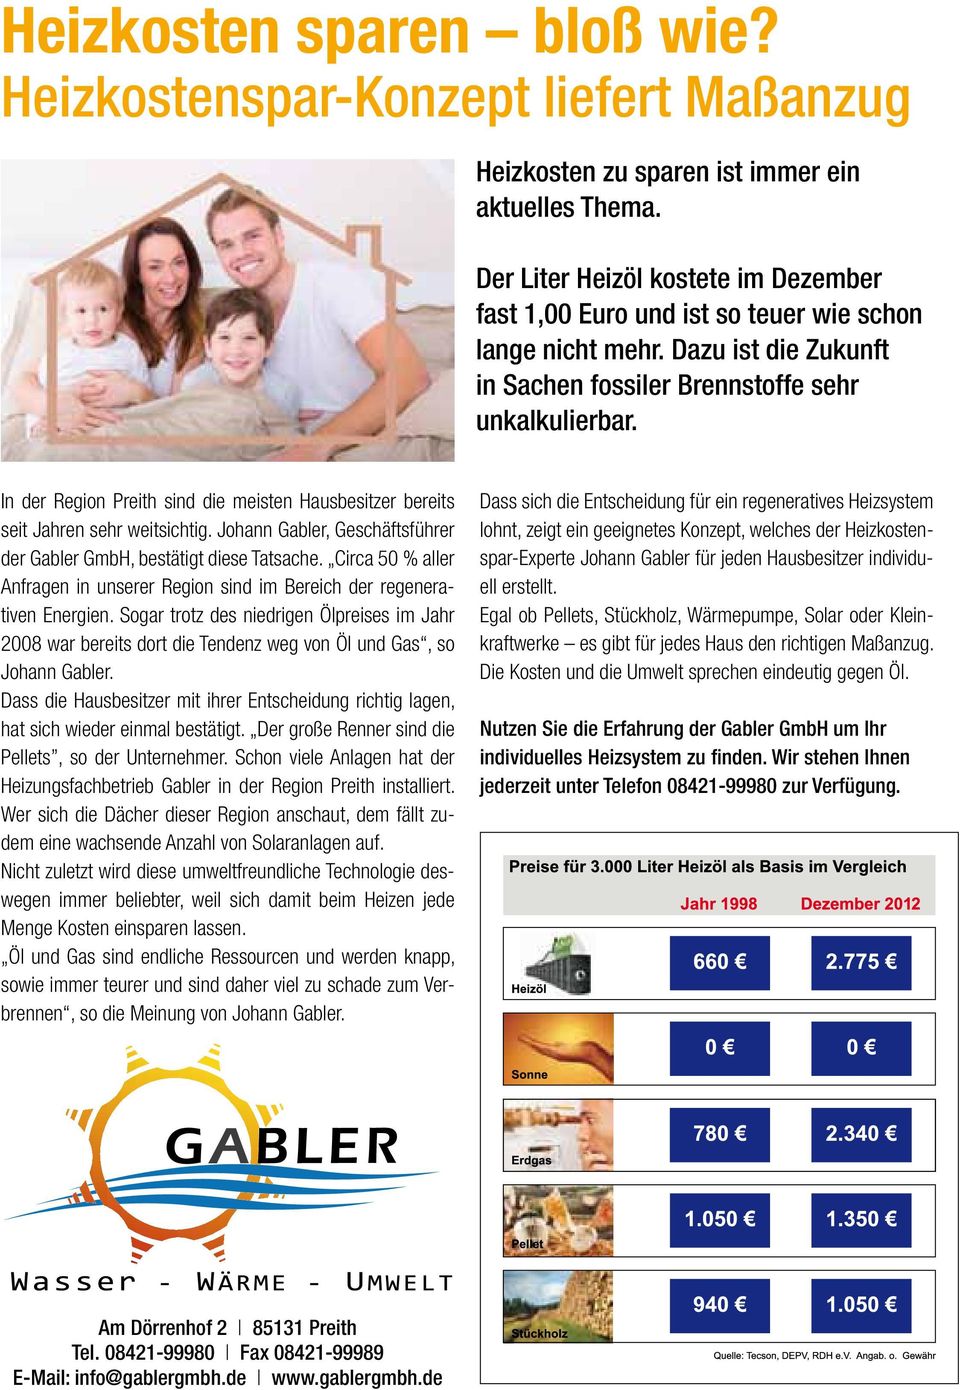 In der Region Preith sind die meisten Hausbesitzer bereits seit Jahren sehr weitsichtig. Johann Gabler, Geschäftsführer der Gabler GmbH, bestätigt diese Tatsache.